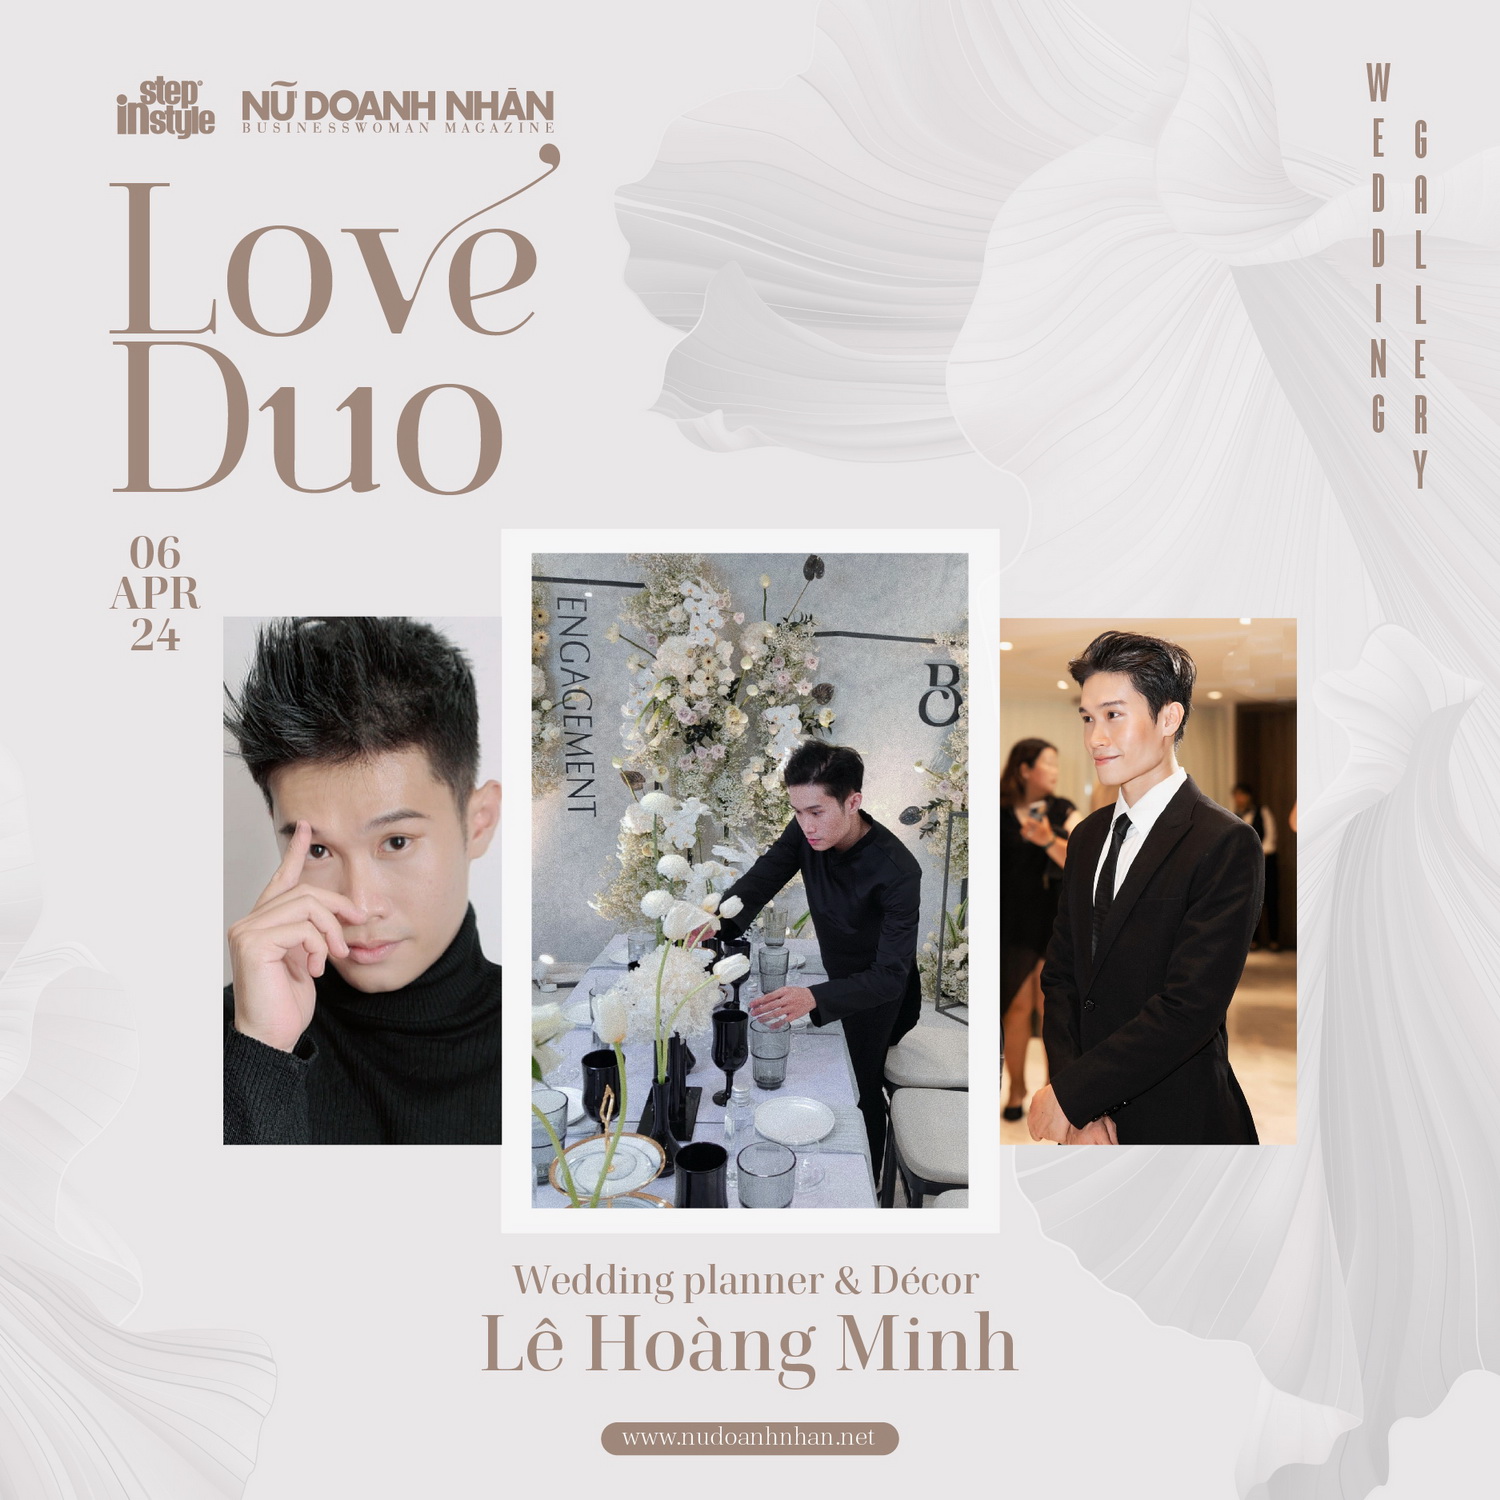 Wedding Planner & Decor Lê Hoàng Minh